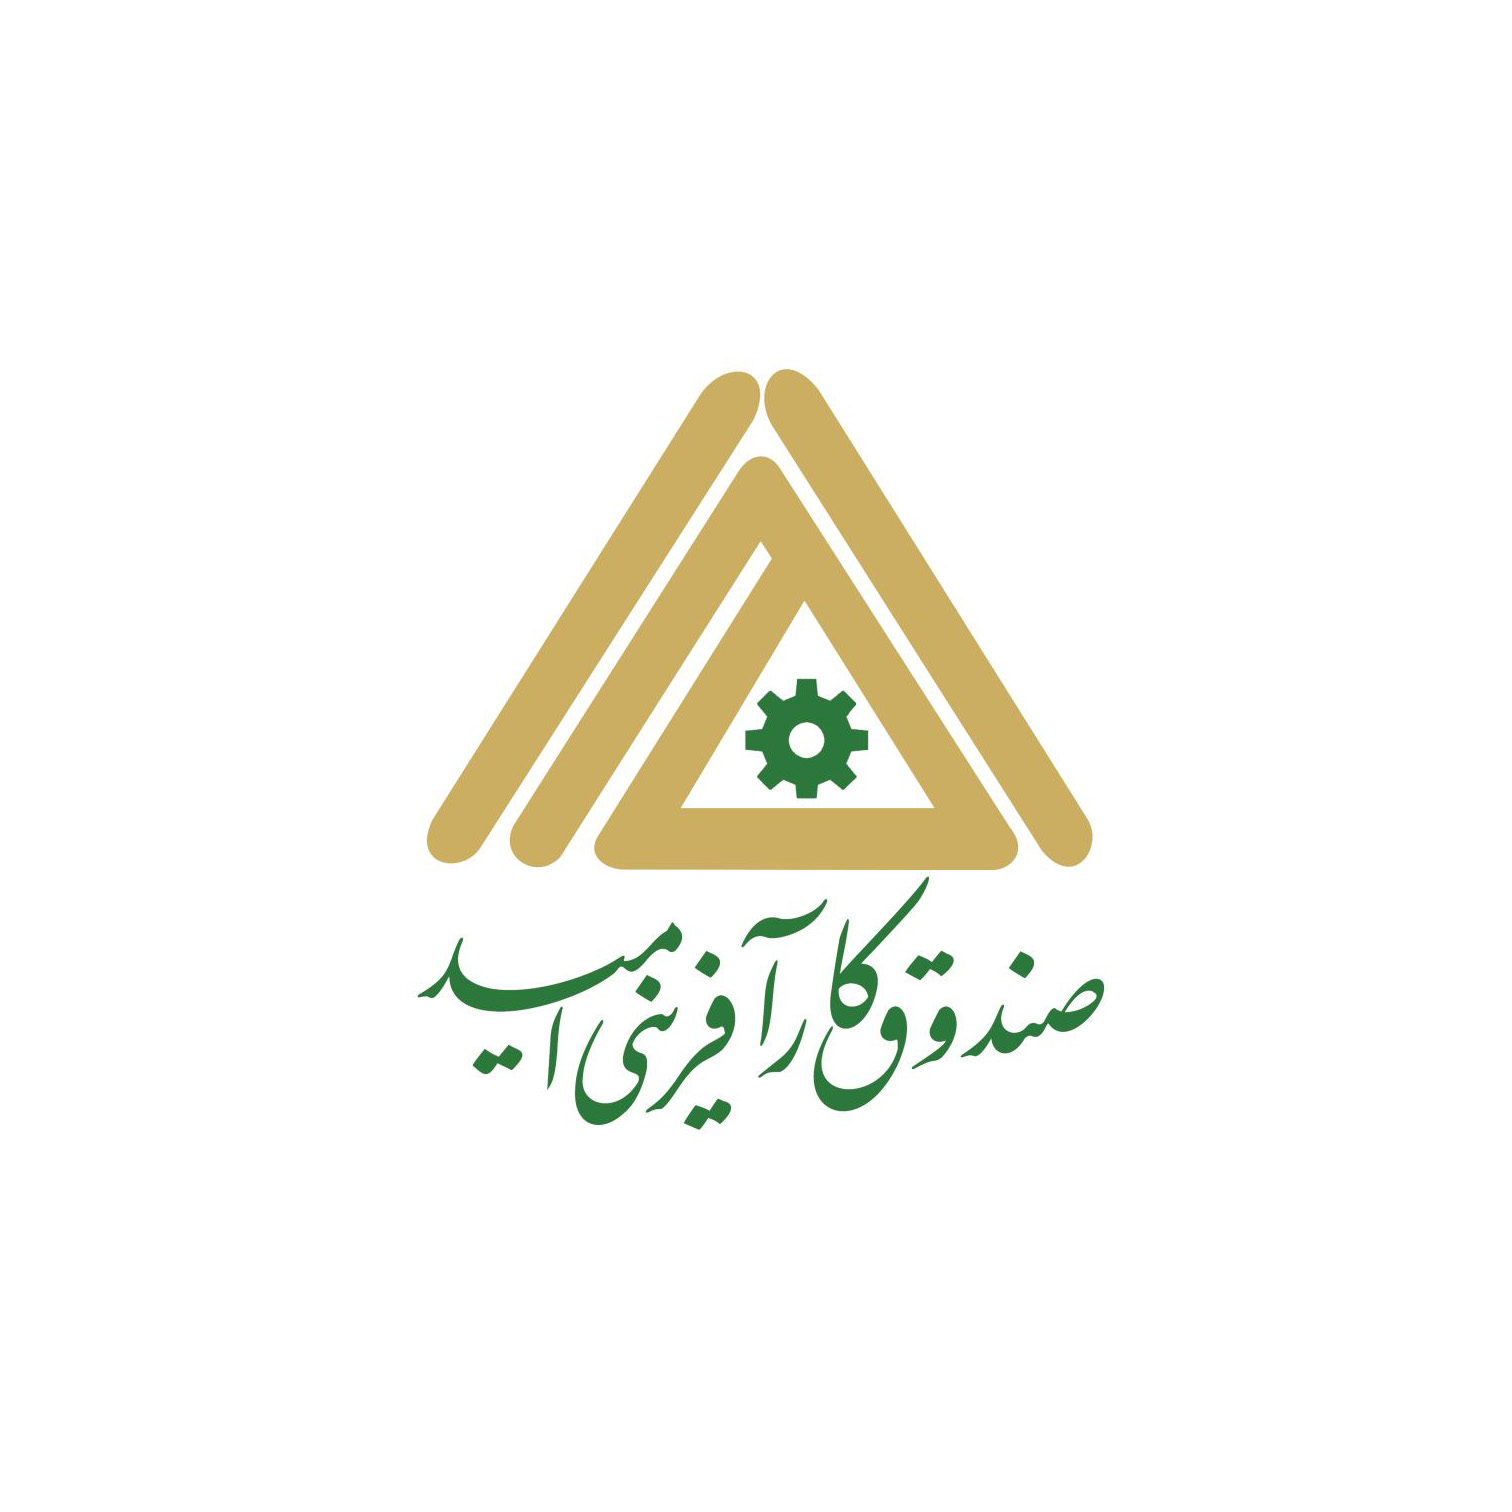 ۵۱۲ نفر در زنجان تسهیلات اشتغال از صندوق کارآفرینی امید دریافت کردند